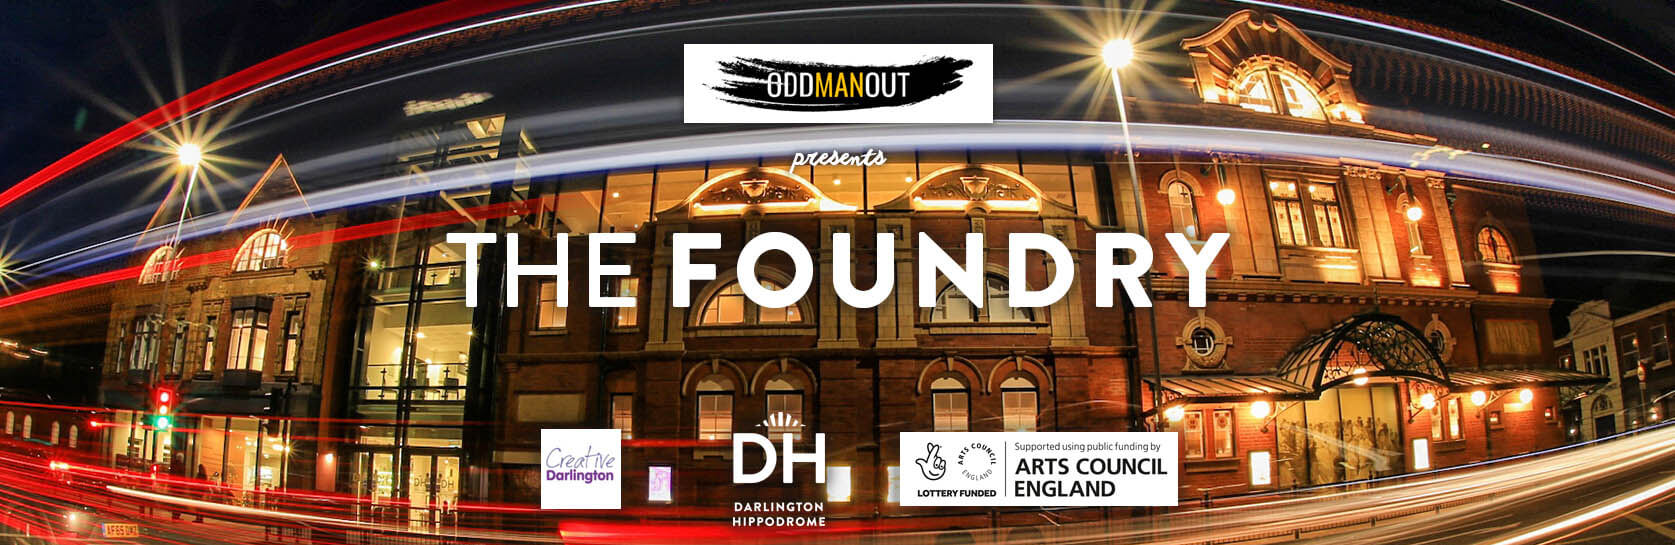 ODDMANOUT presents The Foundry @ Darlington Hippodrome